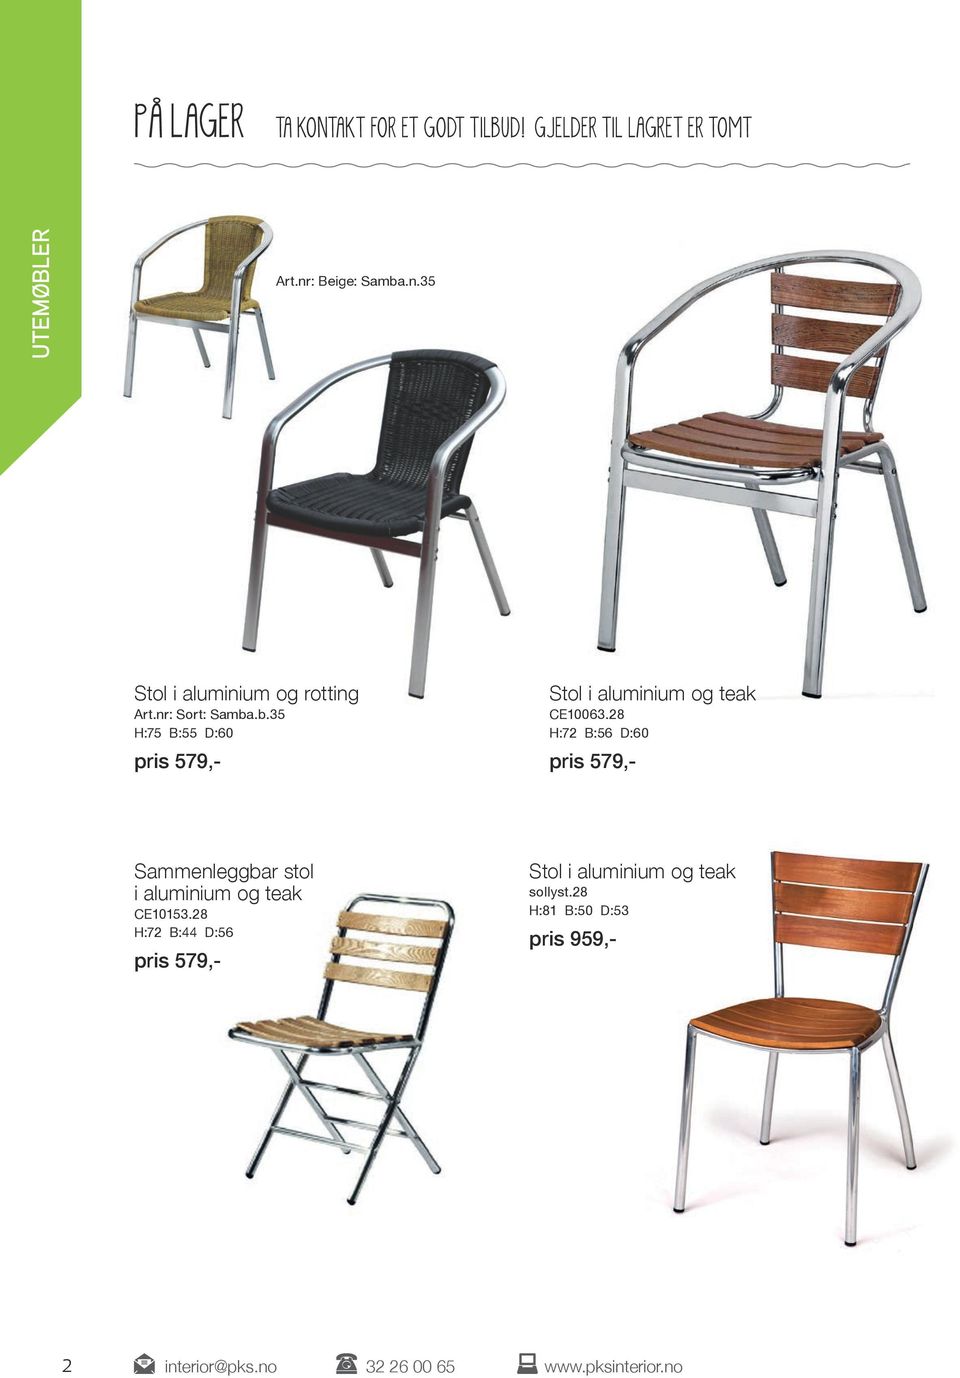 28 H:72 B:56 D:60 pris 579,- Sammenleggbar stol i aluminium og teak CE10153.